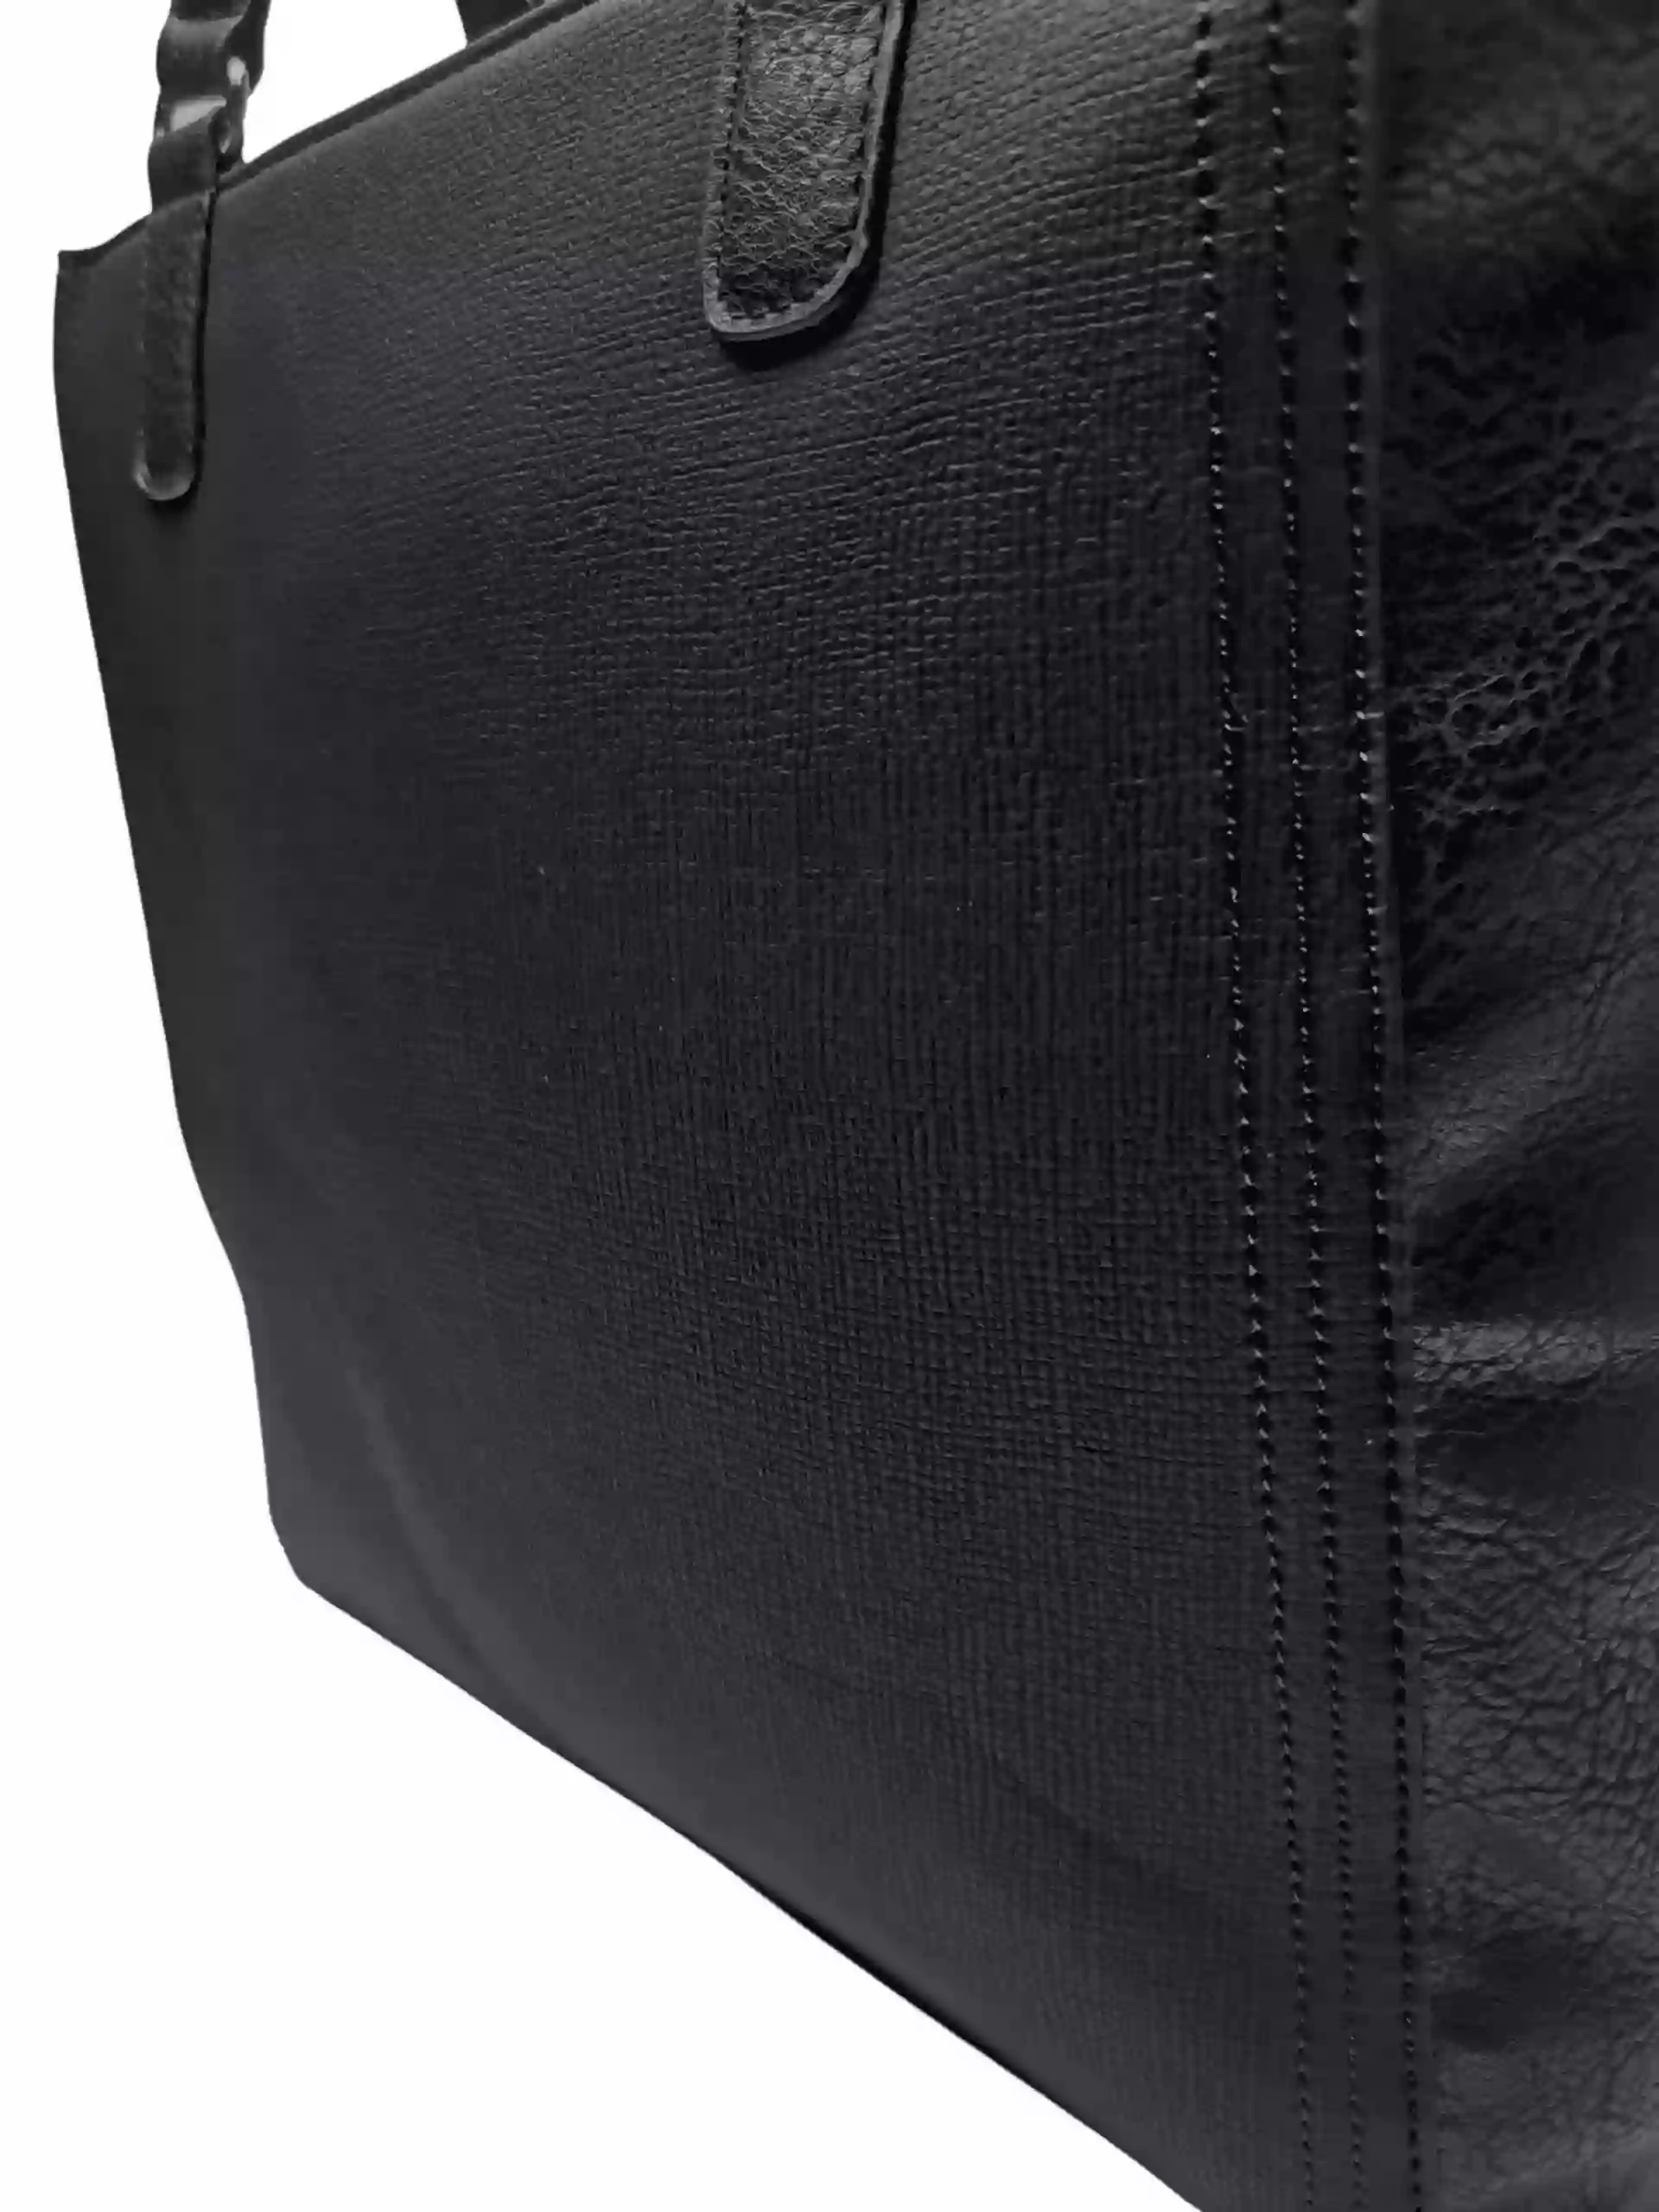 Černá dámská kabelka přes rameno s texturou, Tapple, H17237, detail kabelky přes rameno